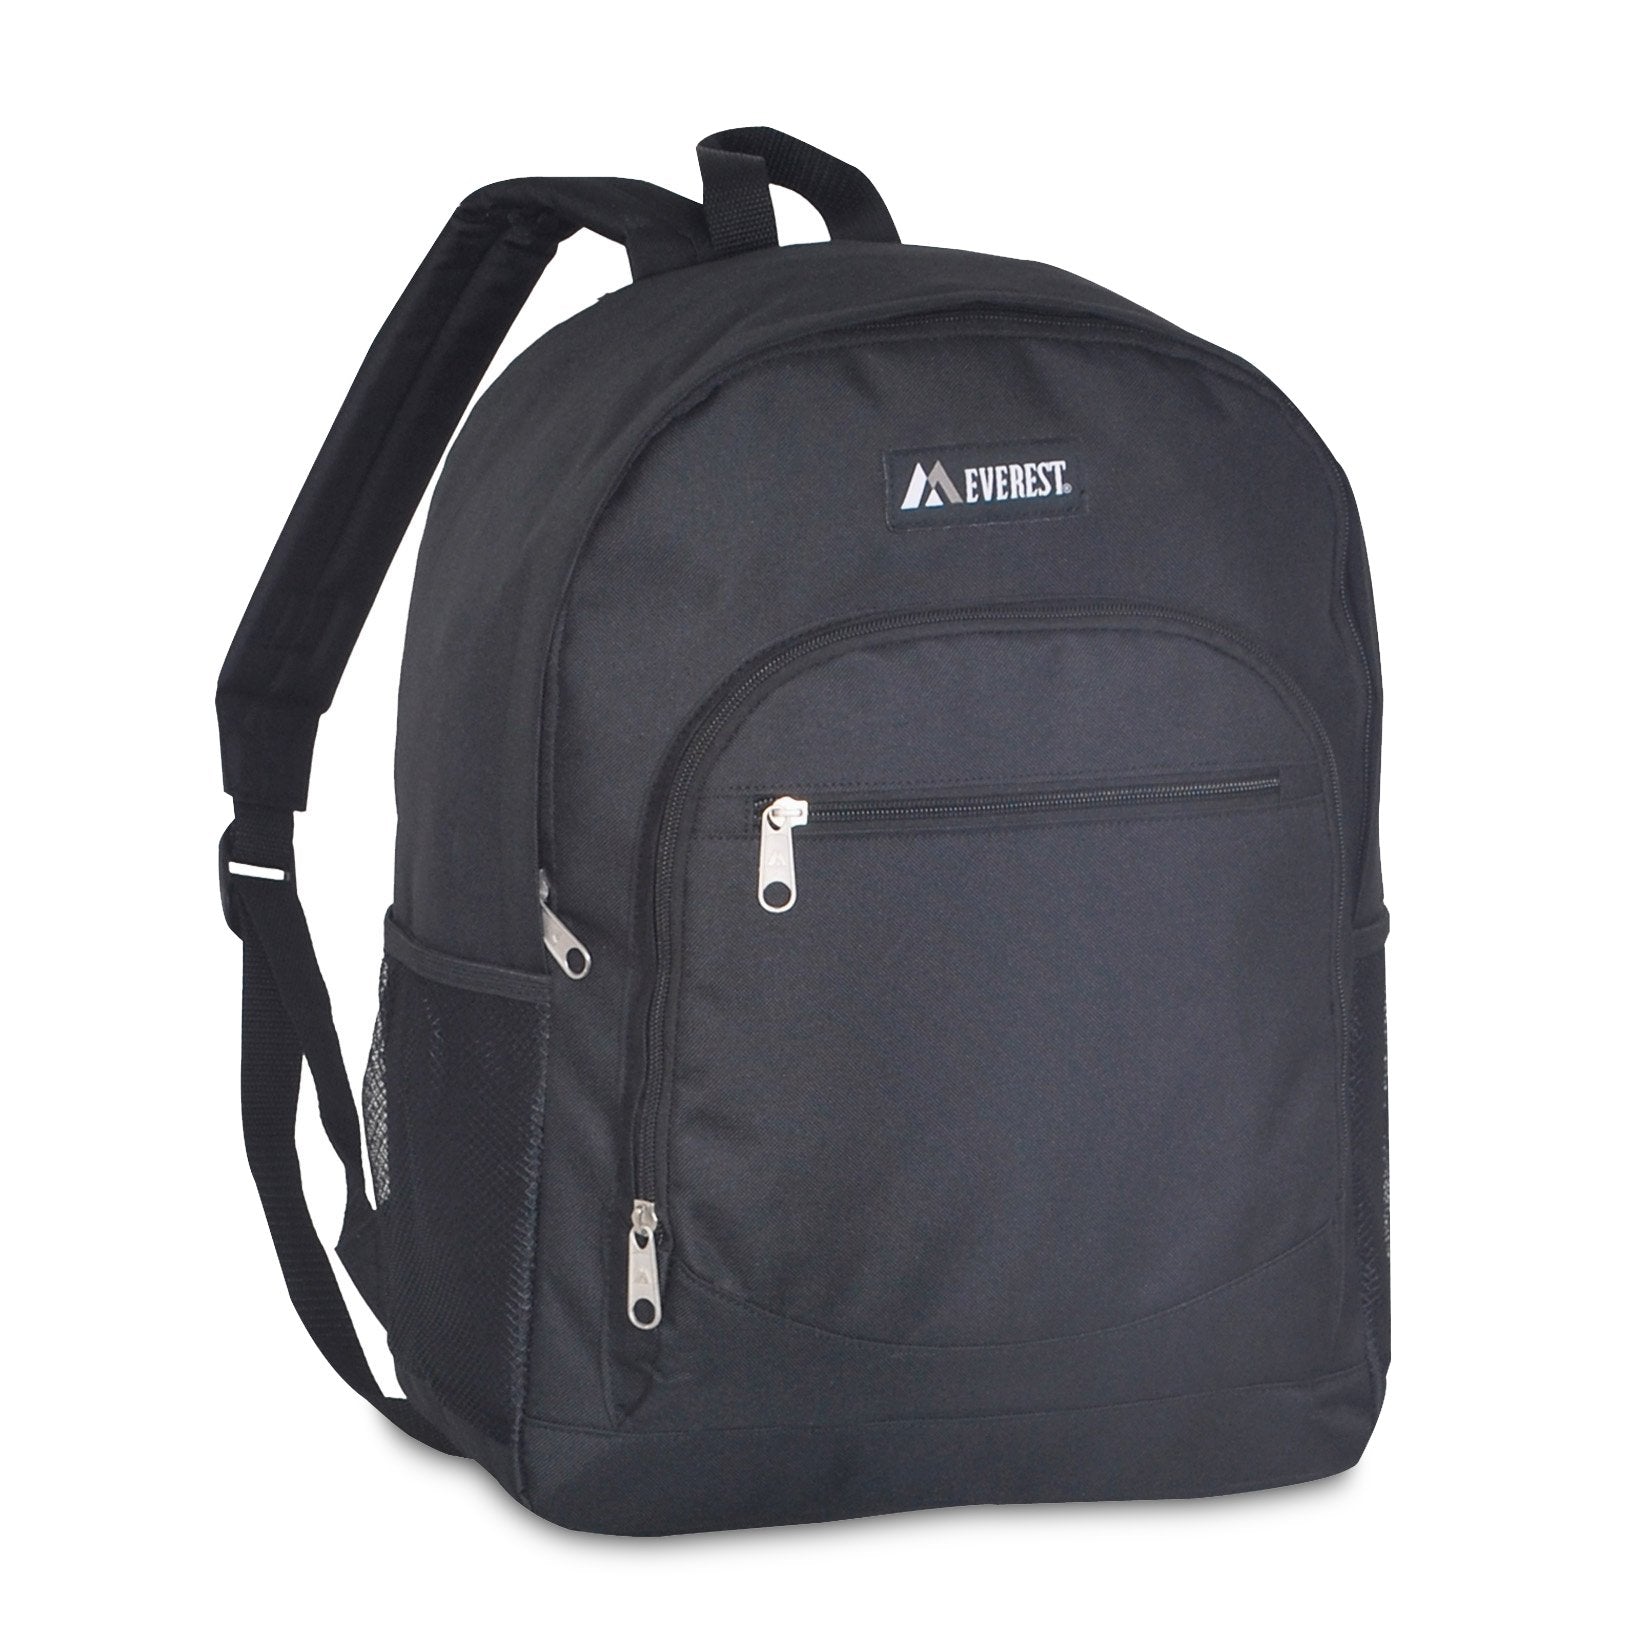 Everest-Casual Backpack w/ Side Mesh Pocket